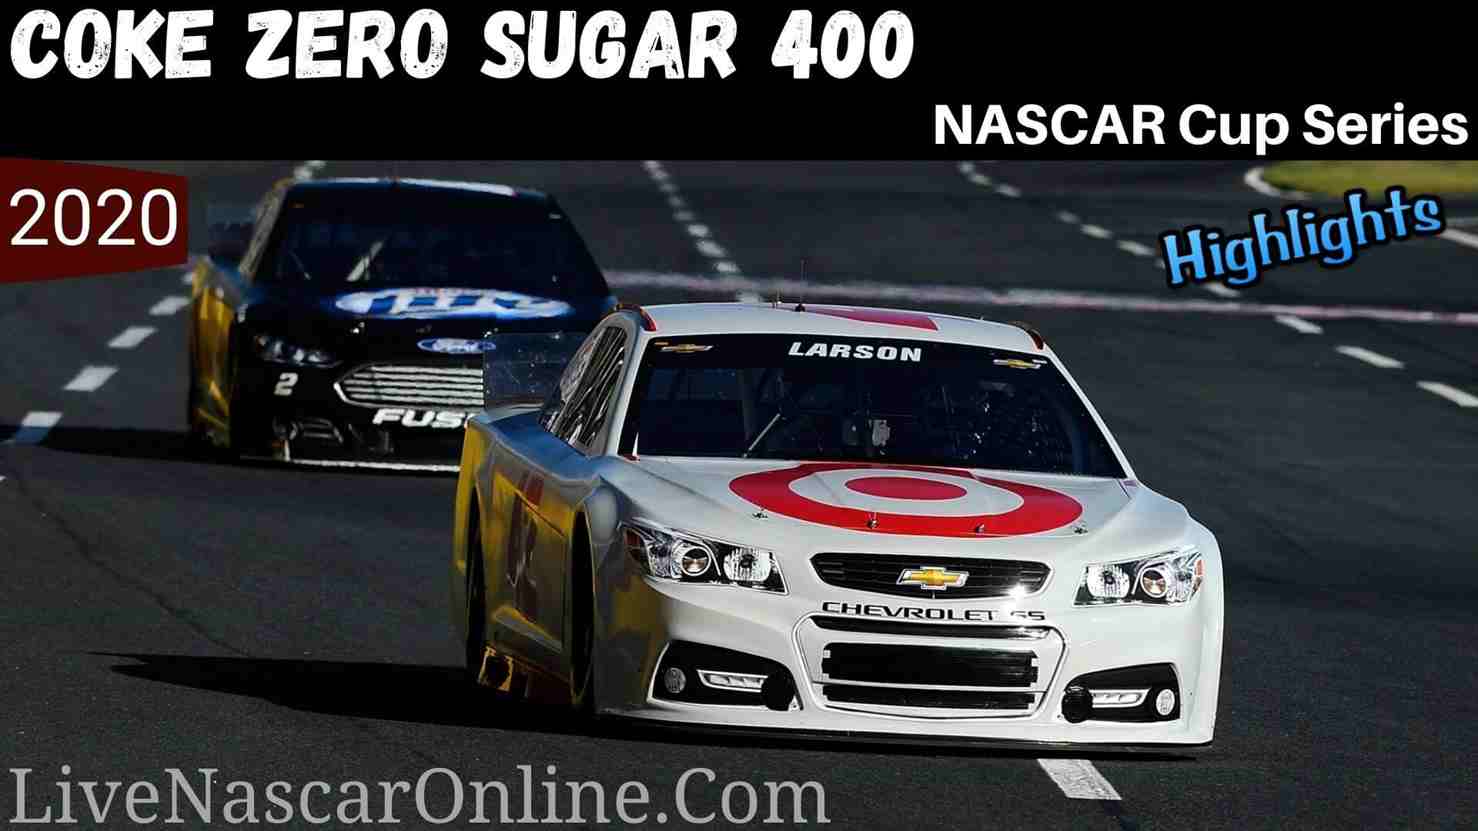 Coke Zero Sugar 400 Nascar Cup Series Highlights 2020